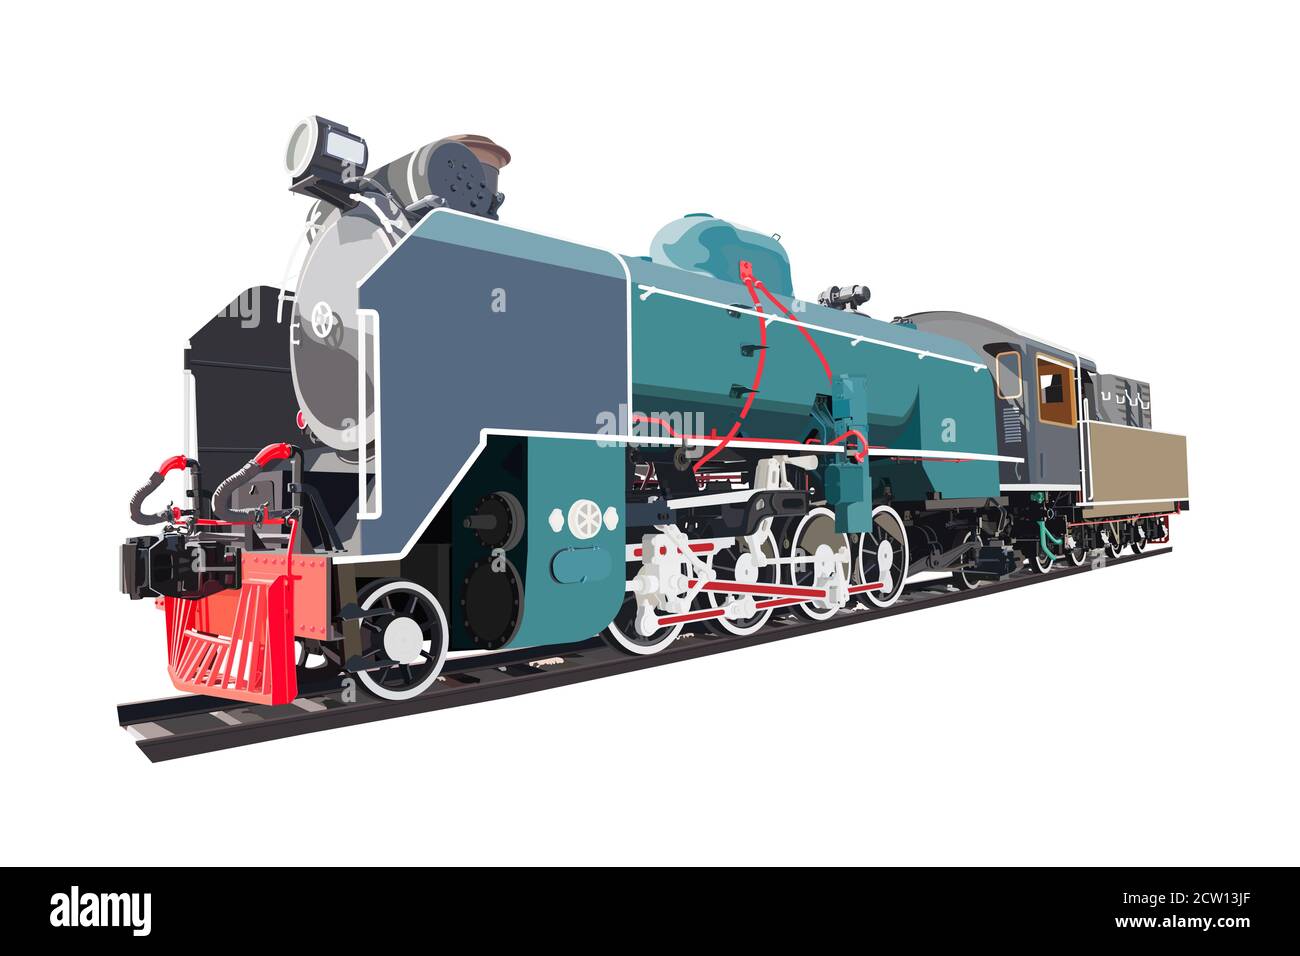 Transport de locomotive à vapeur, train d'époque, isolé sur fond blanc. Illustration vectorielle. Illustration de Vecteur